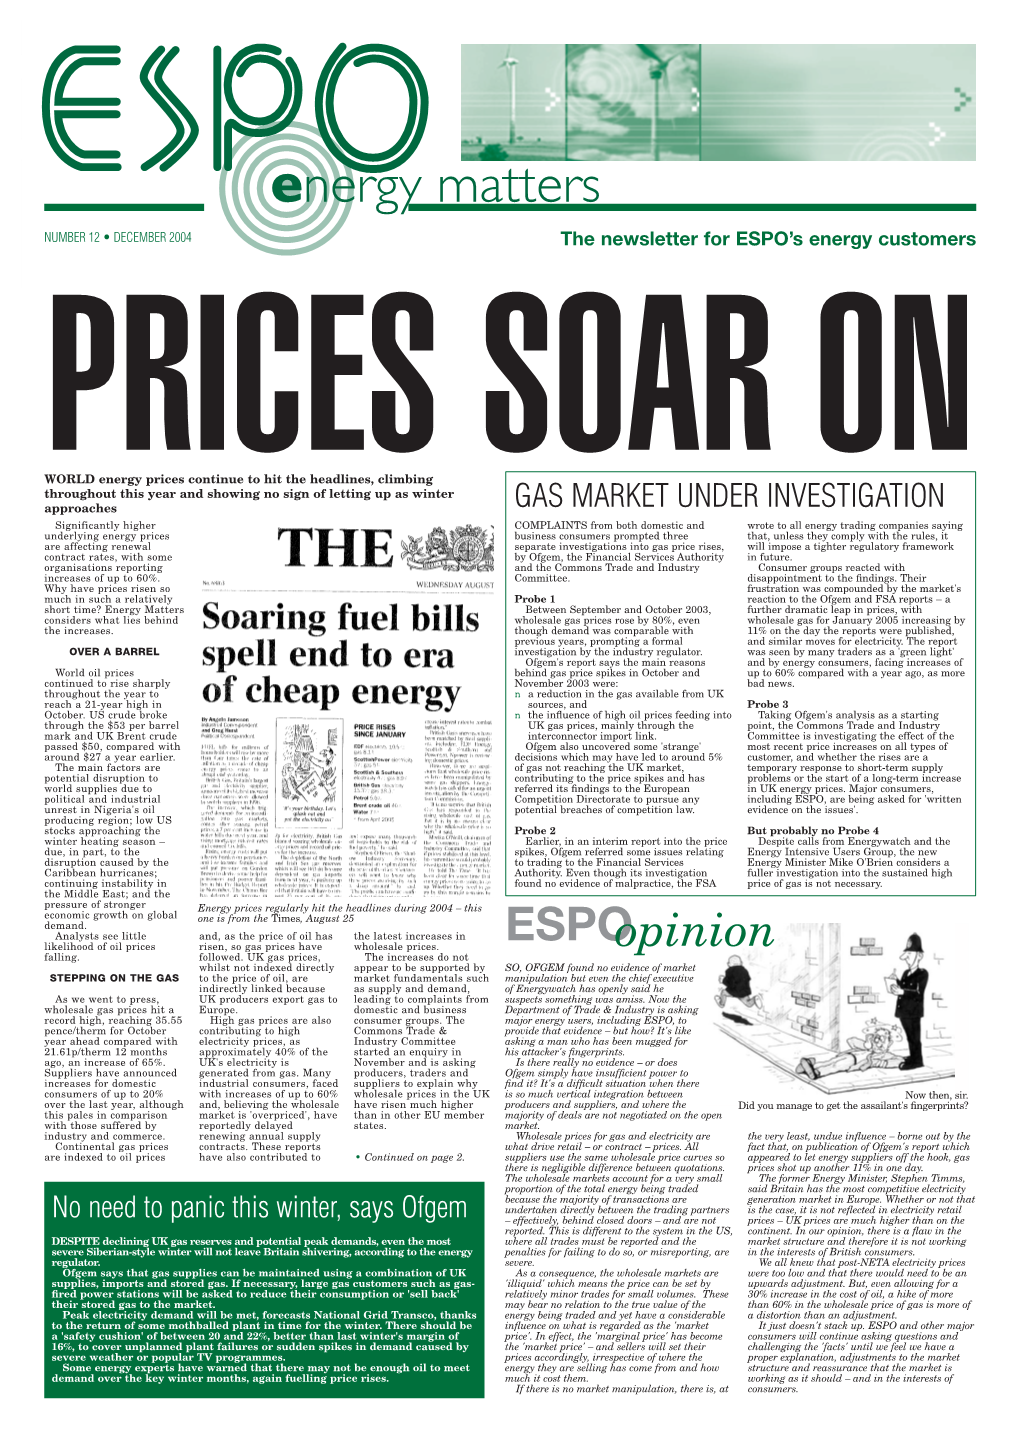 The Newsletter for ESPO's Energy Customers